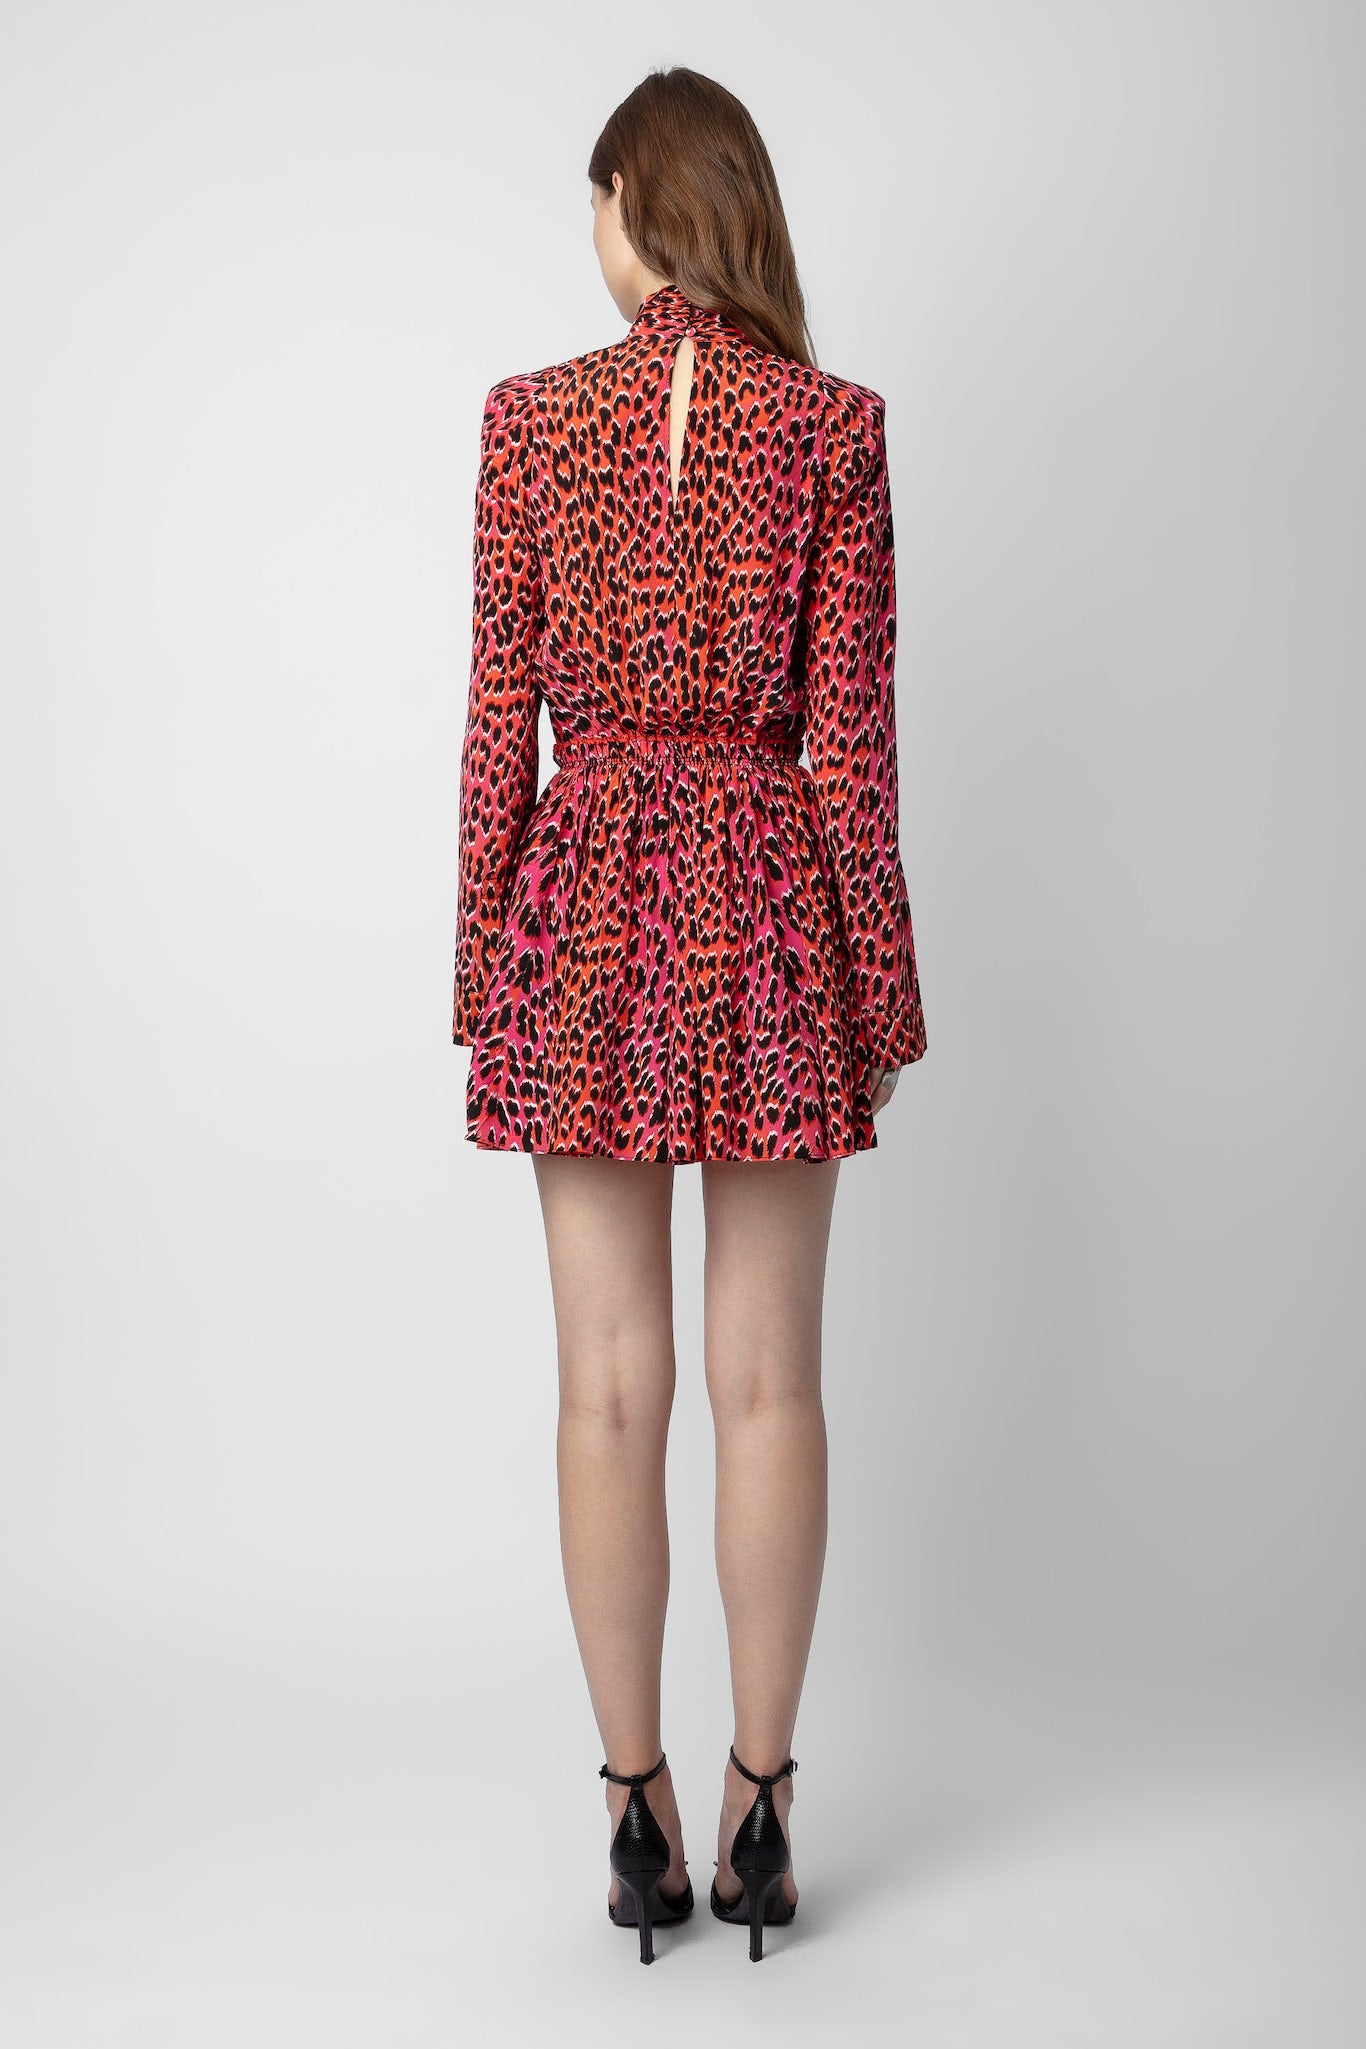 
                  
                    Ryde Leopard Silk Dress
                  
                